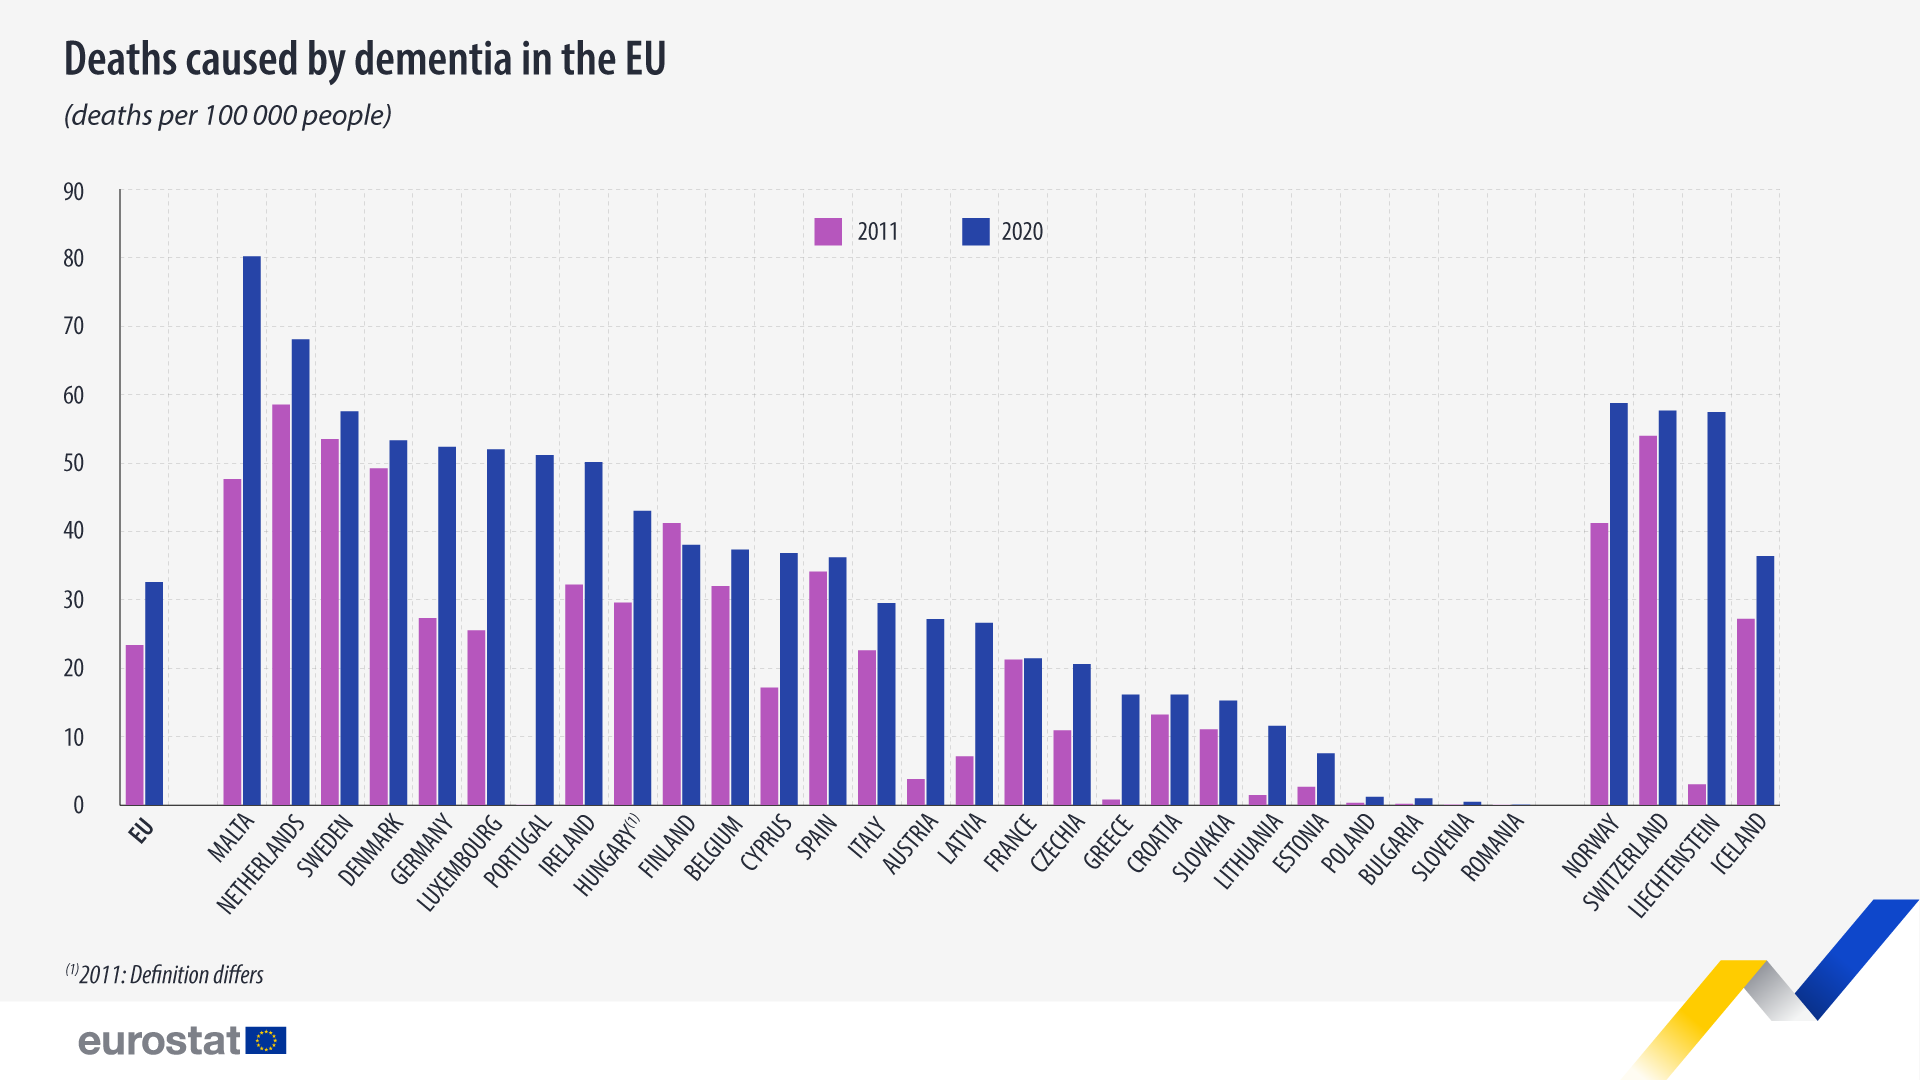 Pylväskaavio: Dementian aiheuttamat kuolemat EU:ssa, kuolleisuusaste